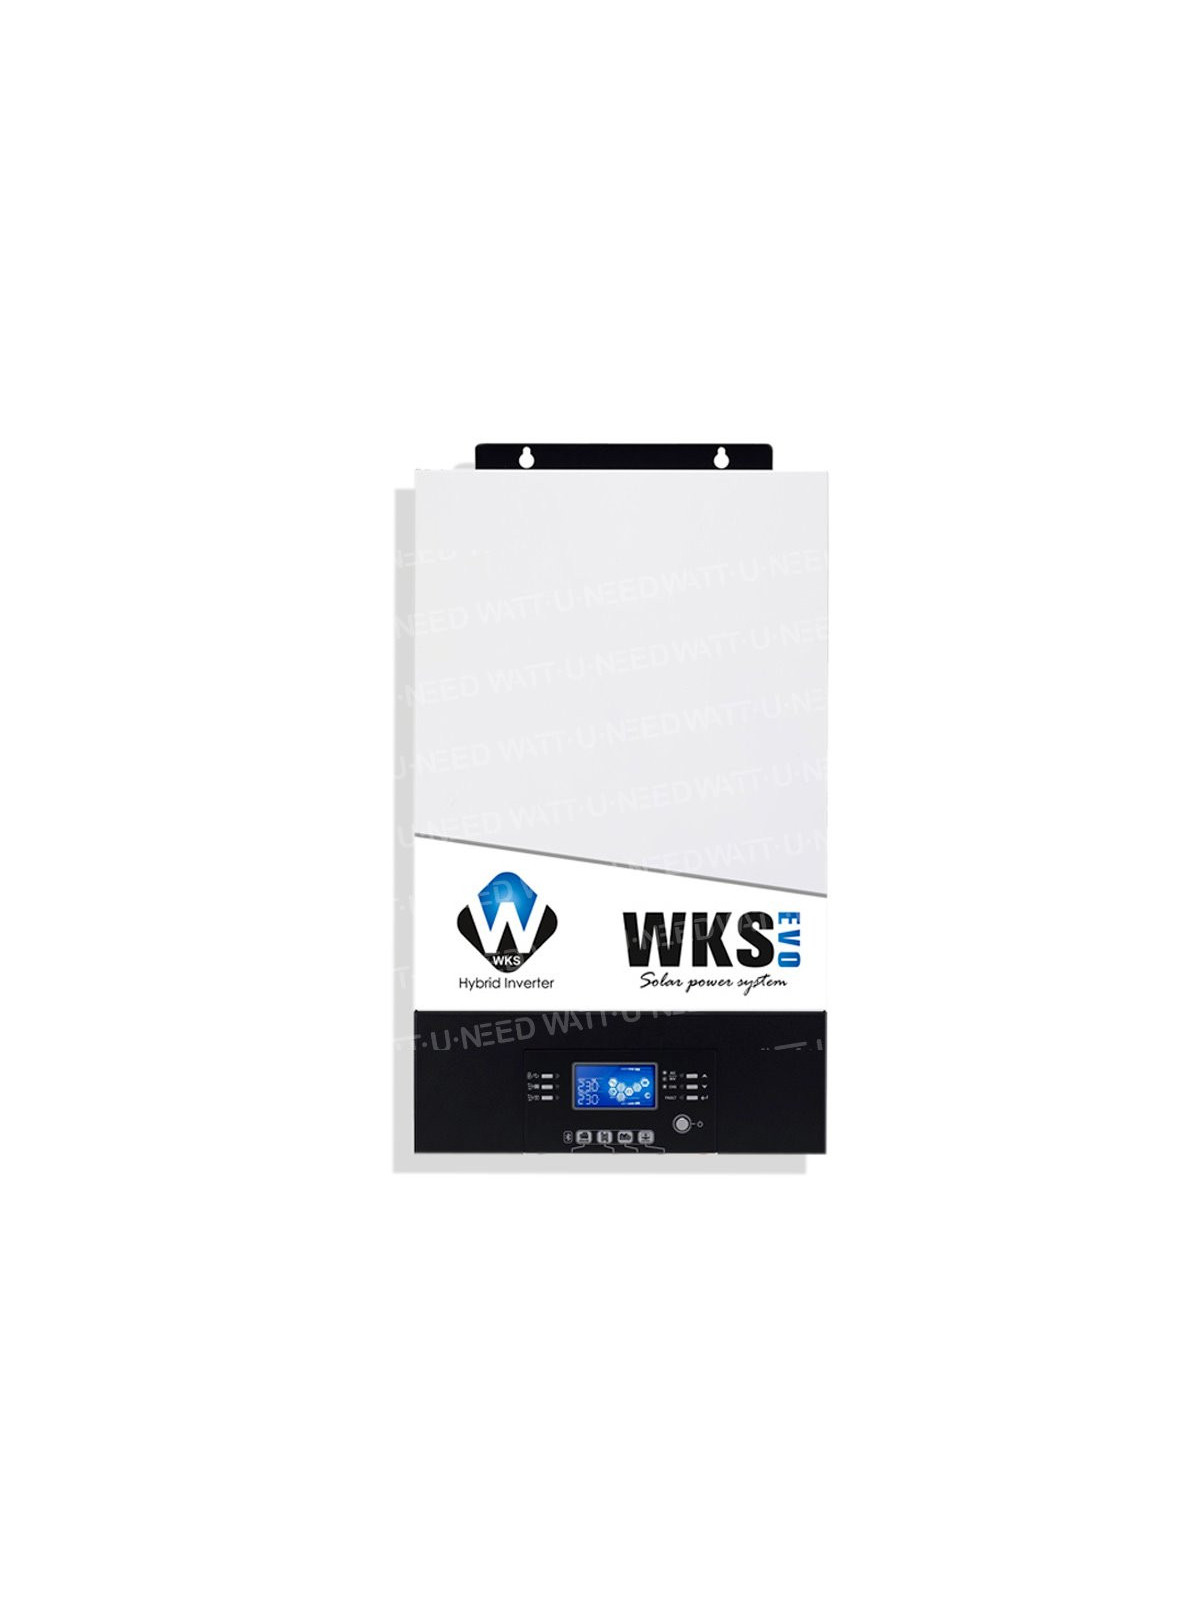 WKS EVO hybrid inverter